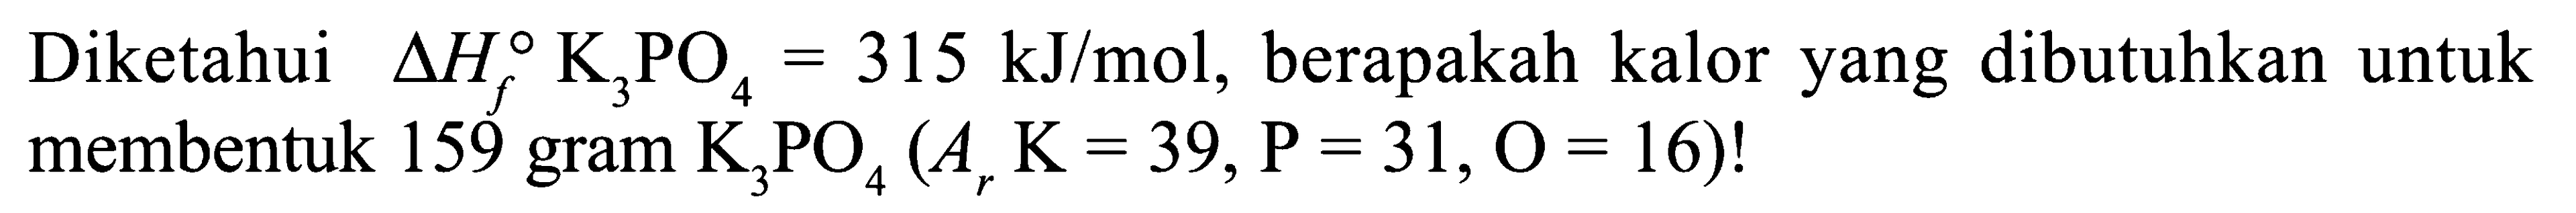 Diketahui delta Hf K3PO4 = 315 kJ/mol, berapakah kalor yang dibutuhkan untuk membentuk 159 gram K3PO4 (Ar K = 39, P = 31, O = 16)!